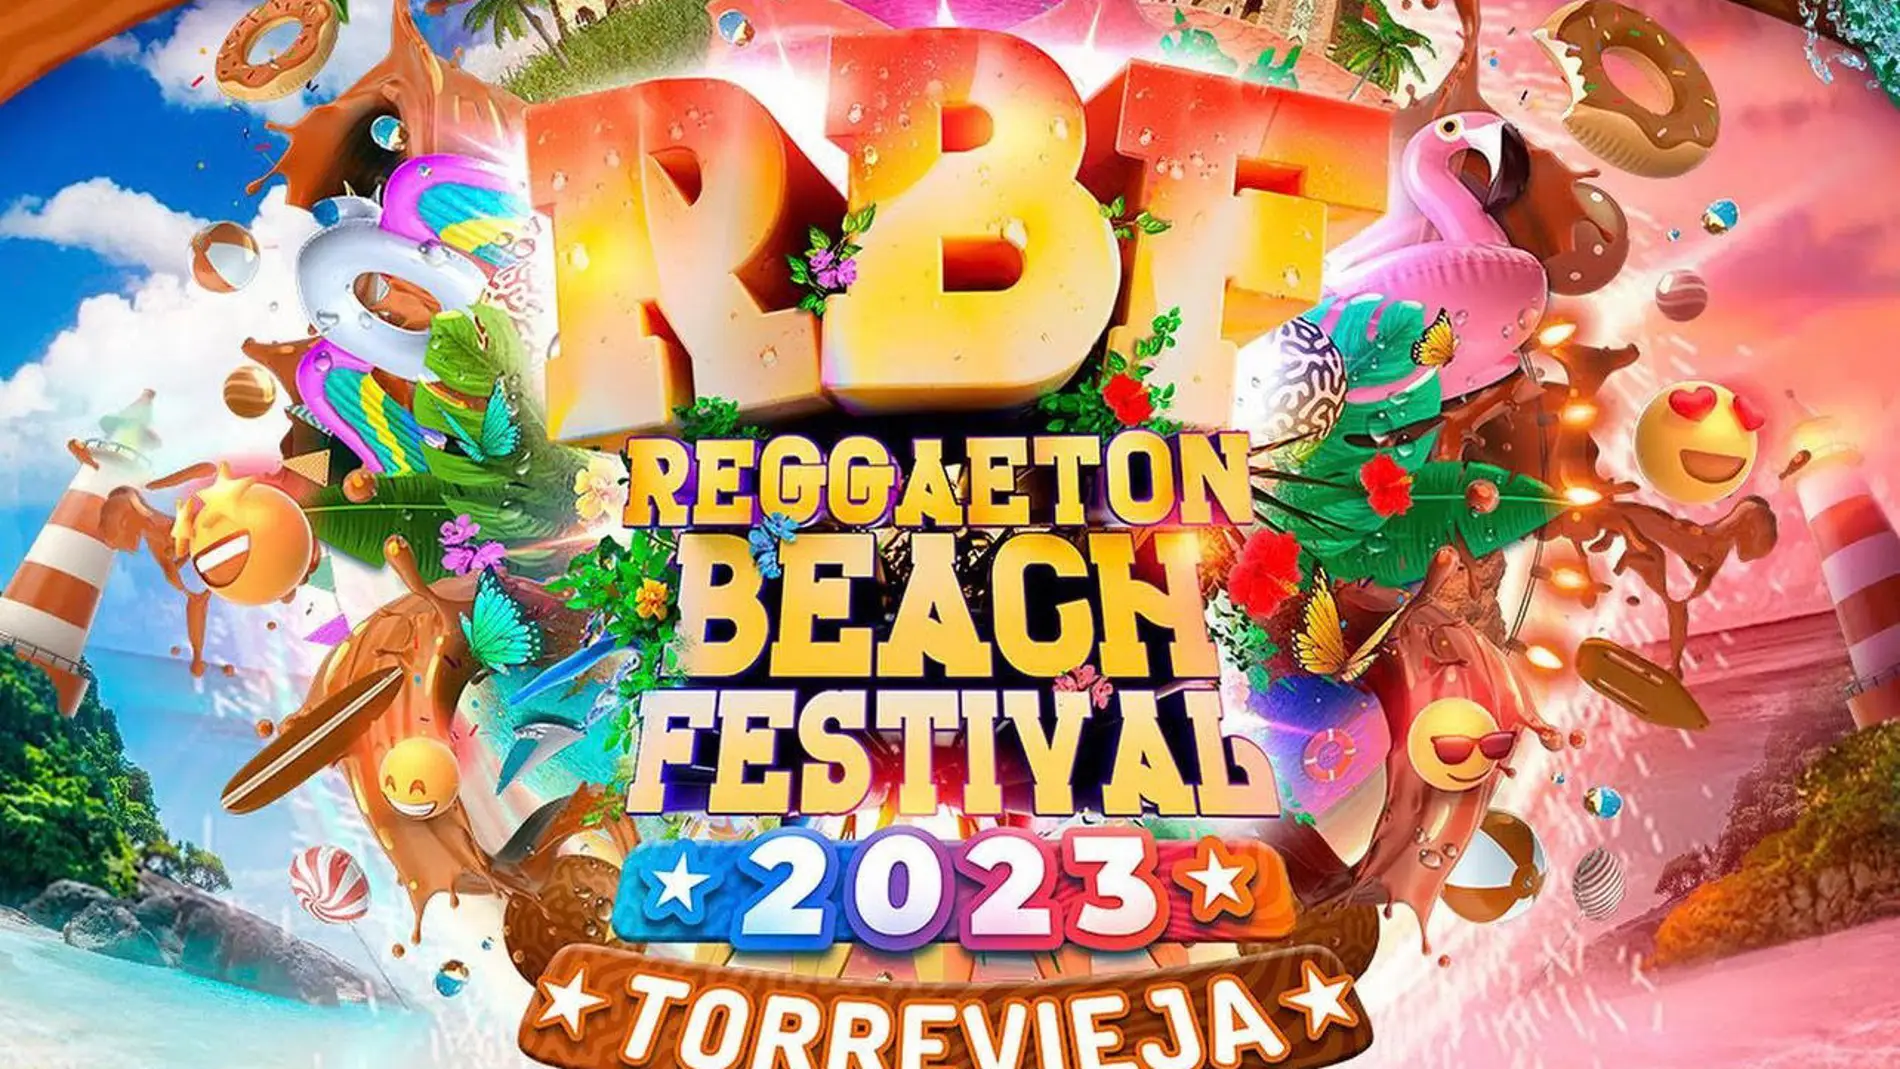 Artistas confirmados para el Reggaeton Beach Festival los días 5 y 6 de agosto en Torrevieja 